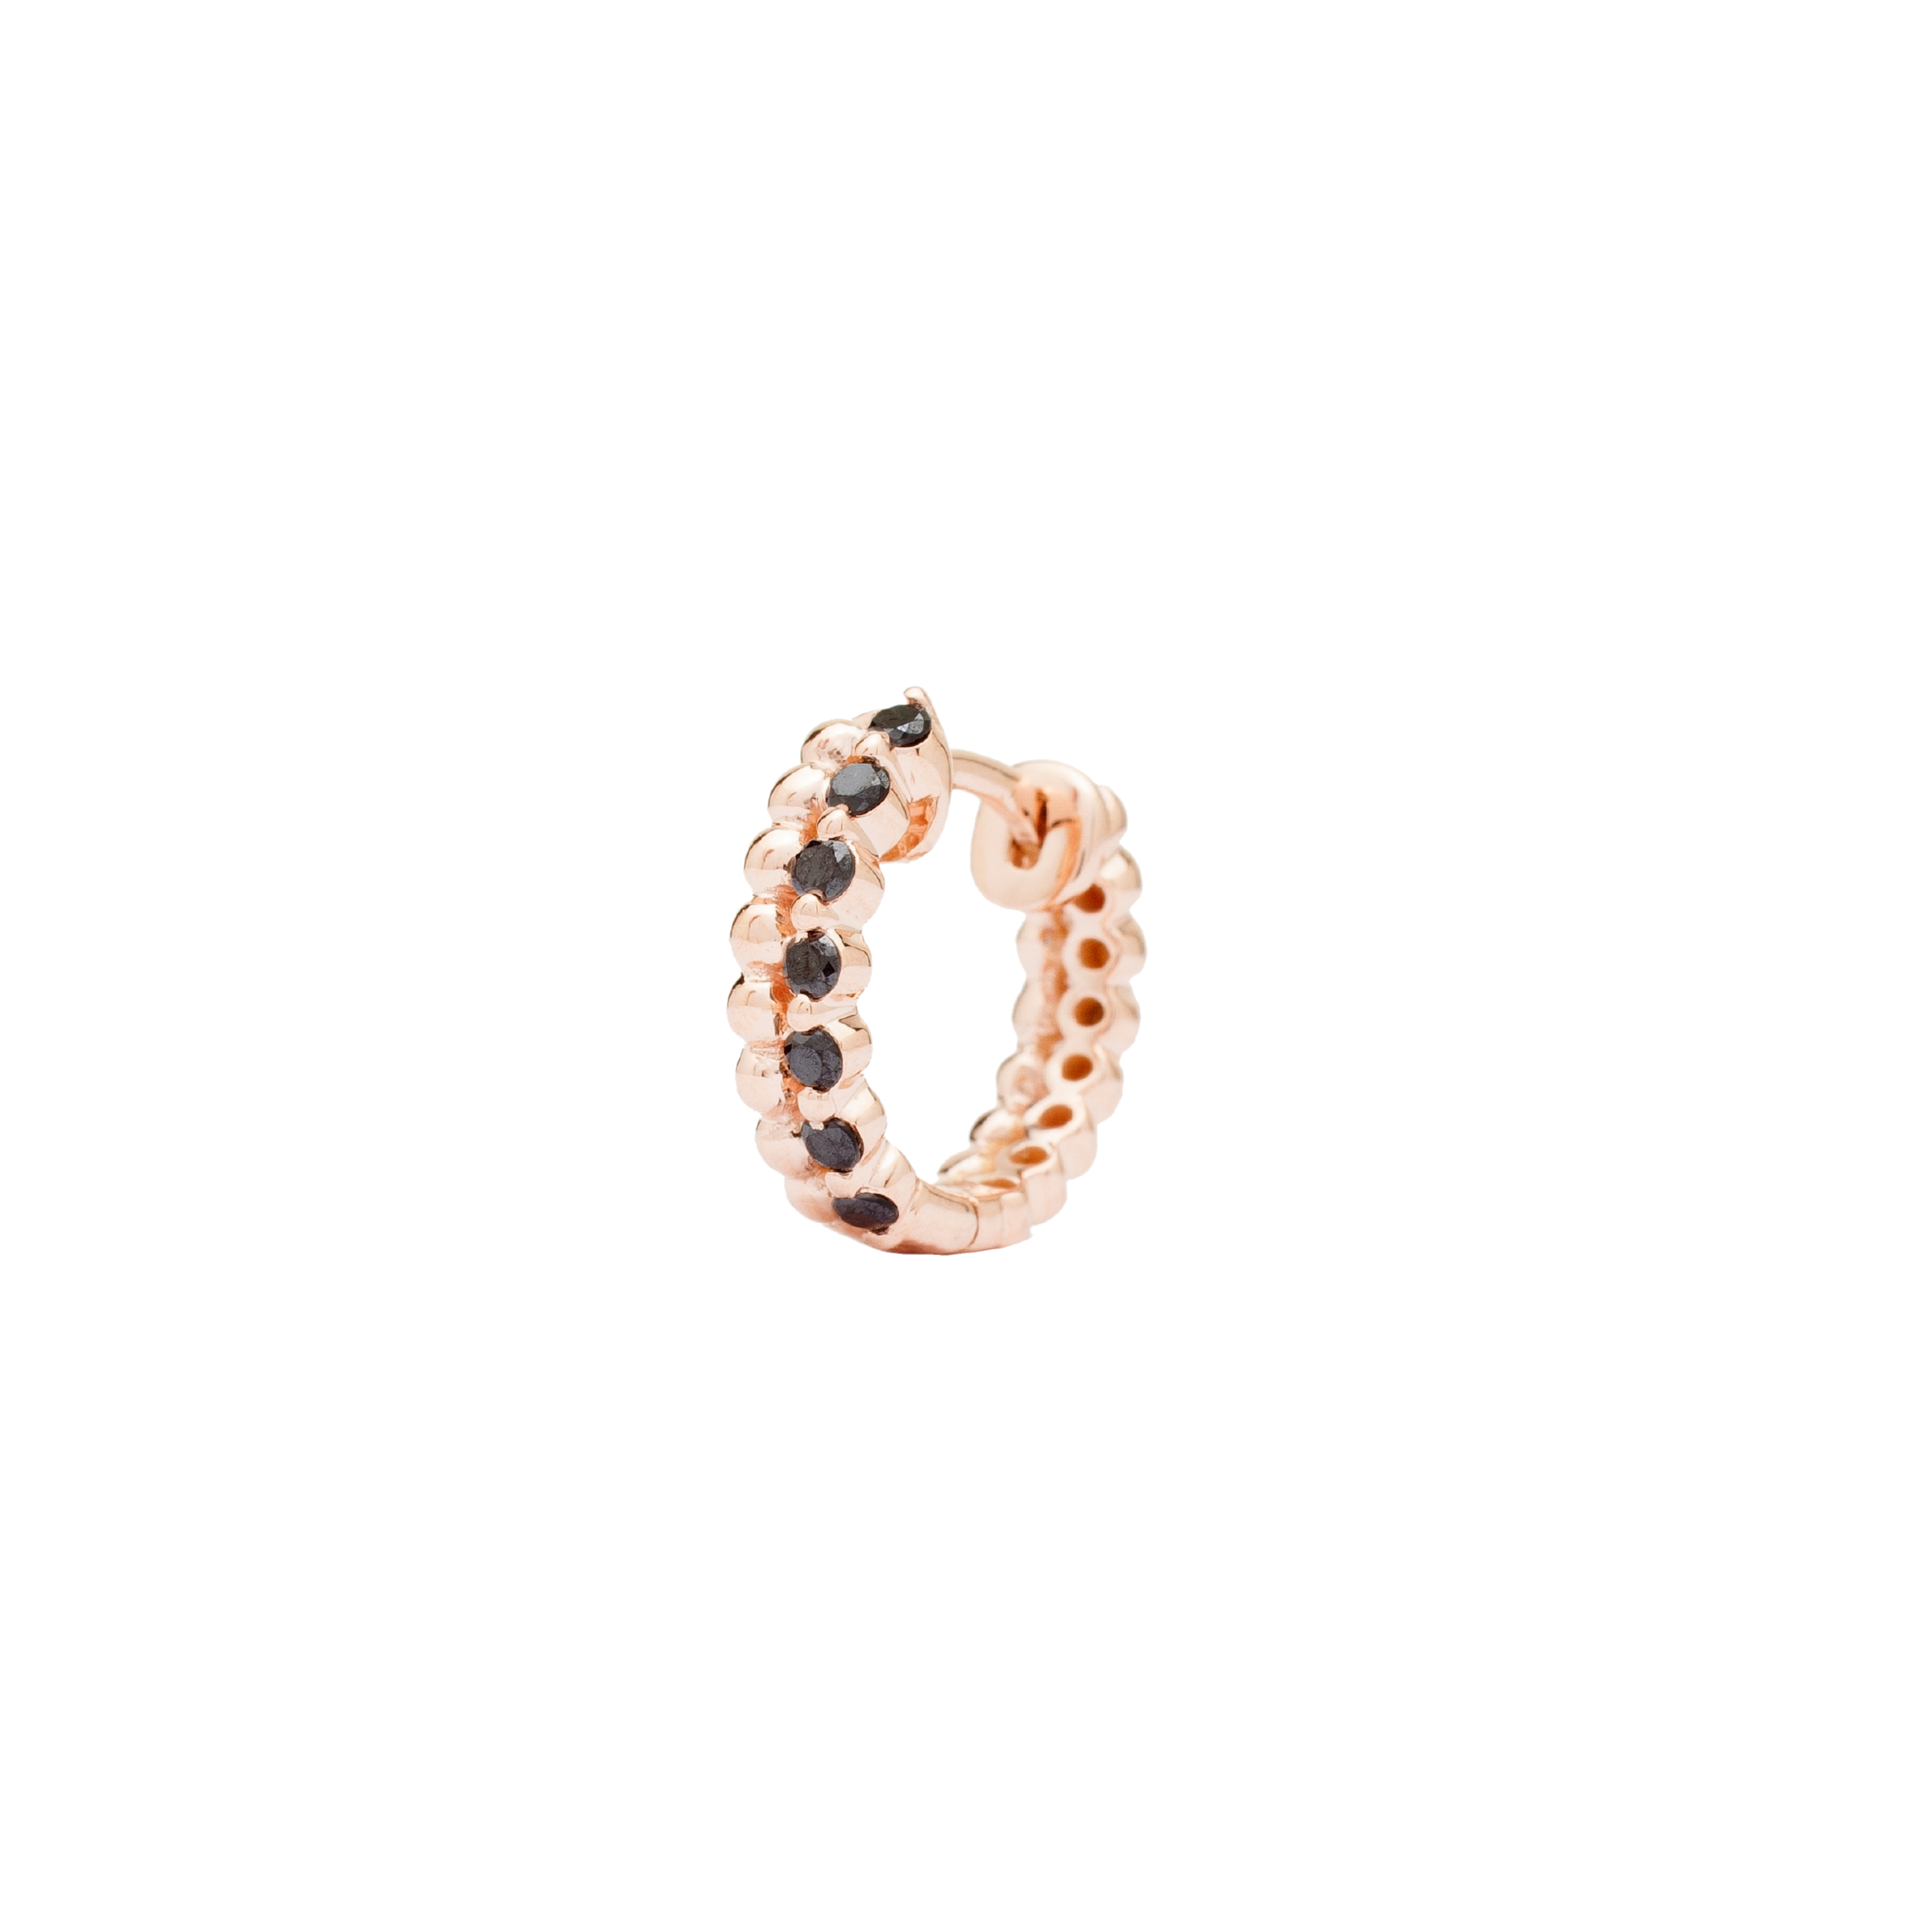 Mono boucle d'oreille anneau créole en or rose et diamants noirs made in France, bijou tendance rock pour femmes, idéal pour piercing.